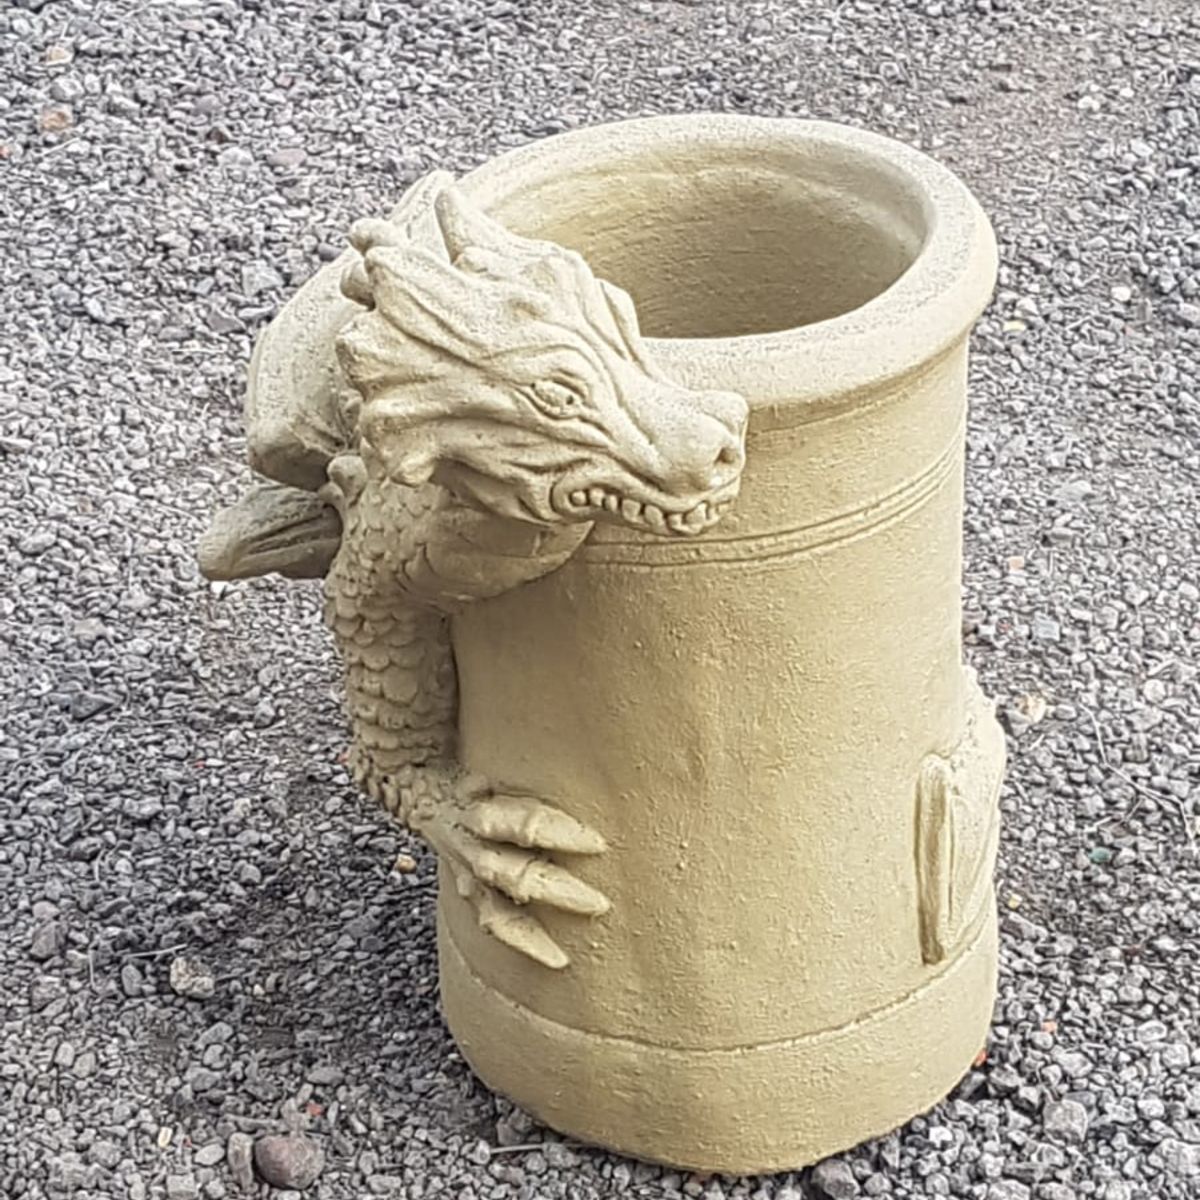 Smirk bathstone dragon chimney pot